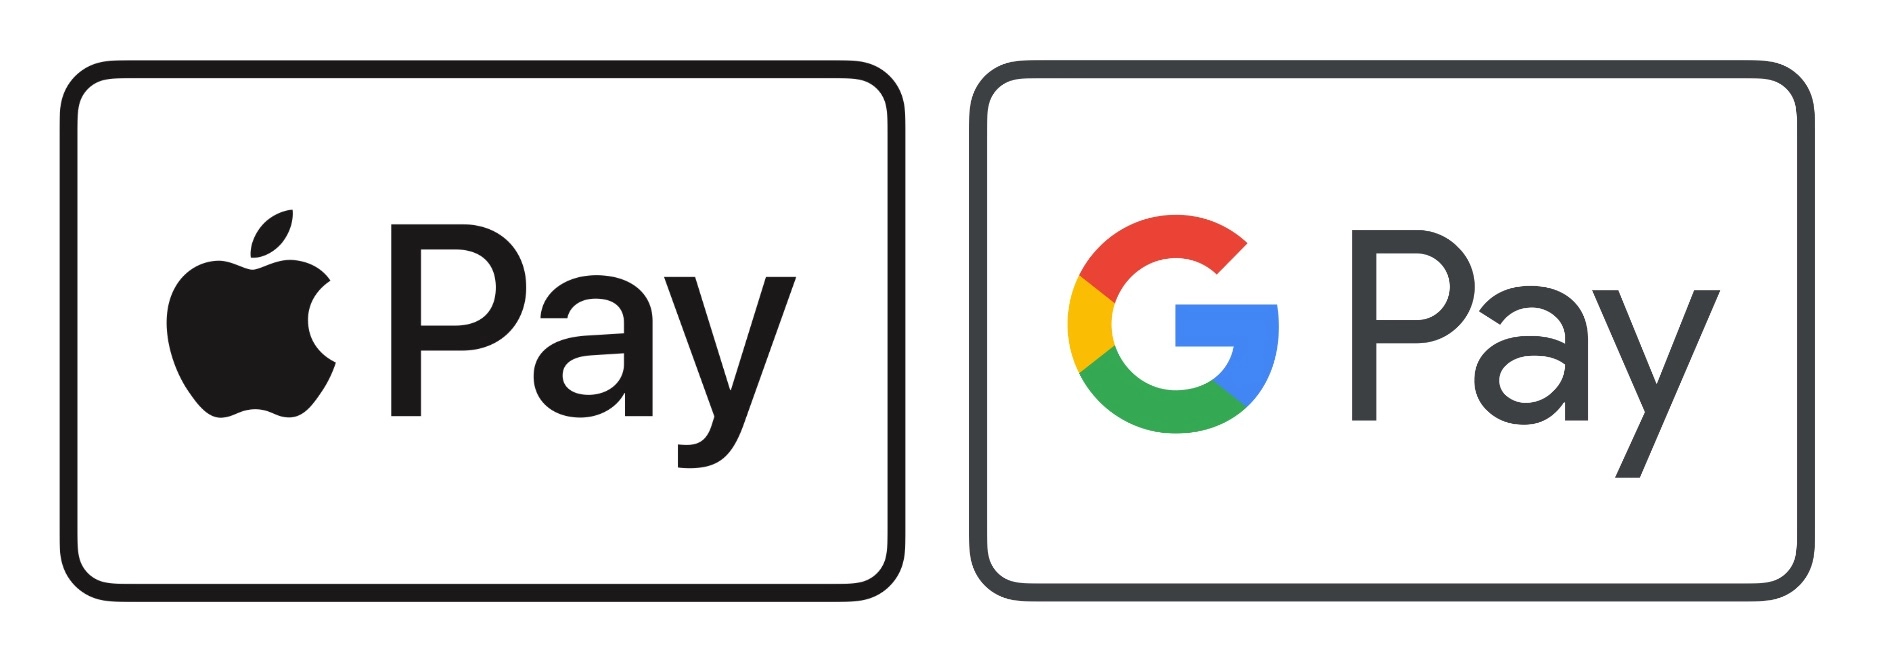 Usuarios de Apple Pay y Google Pay en Rusia están presentando fallas en los servicios